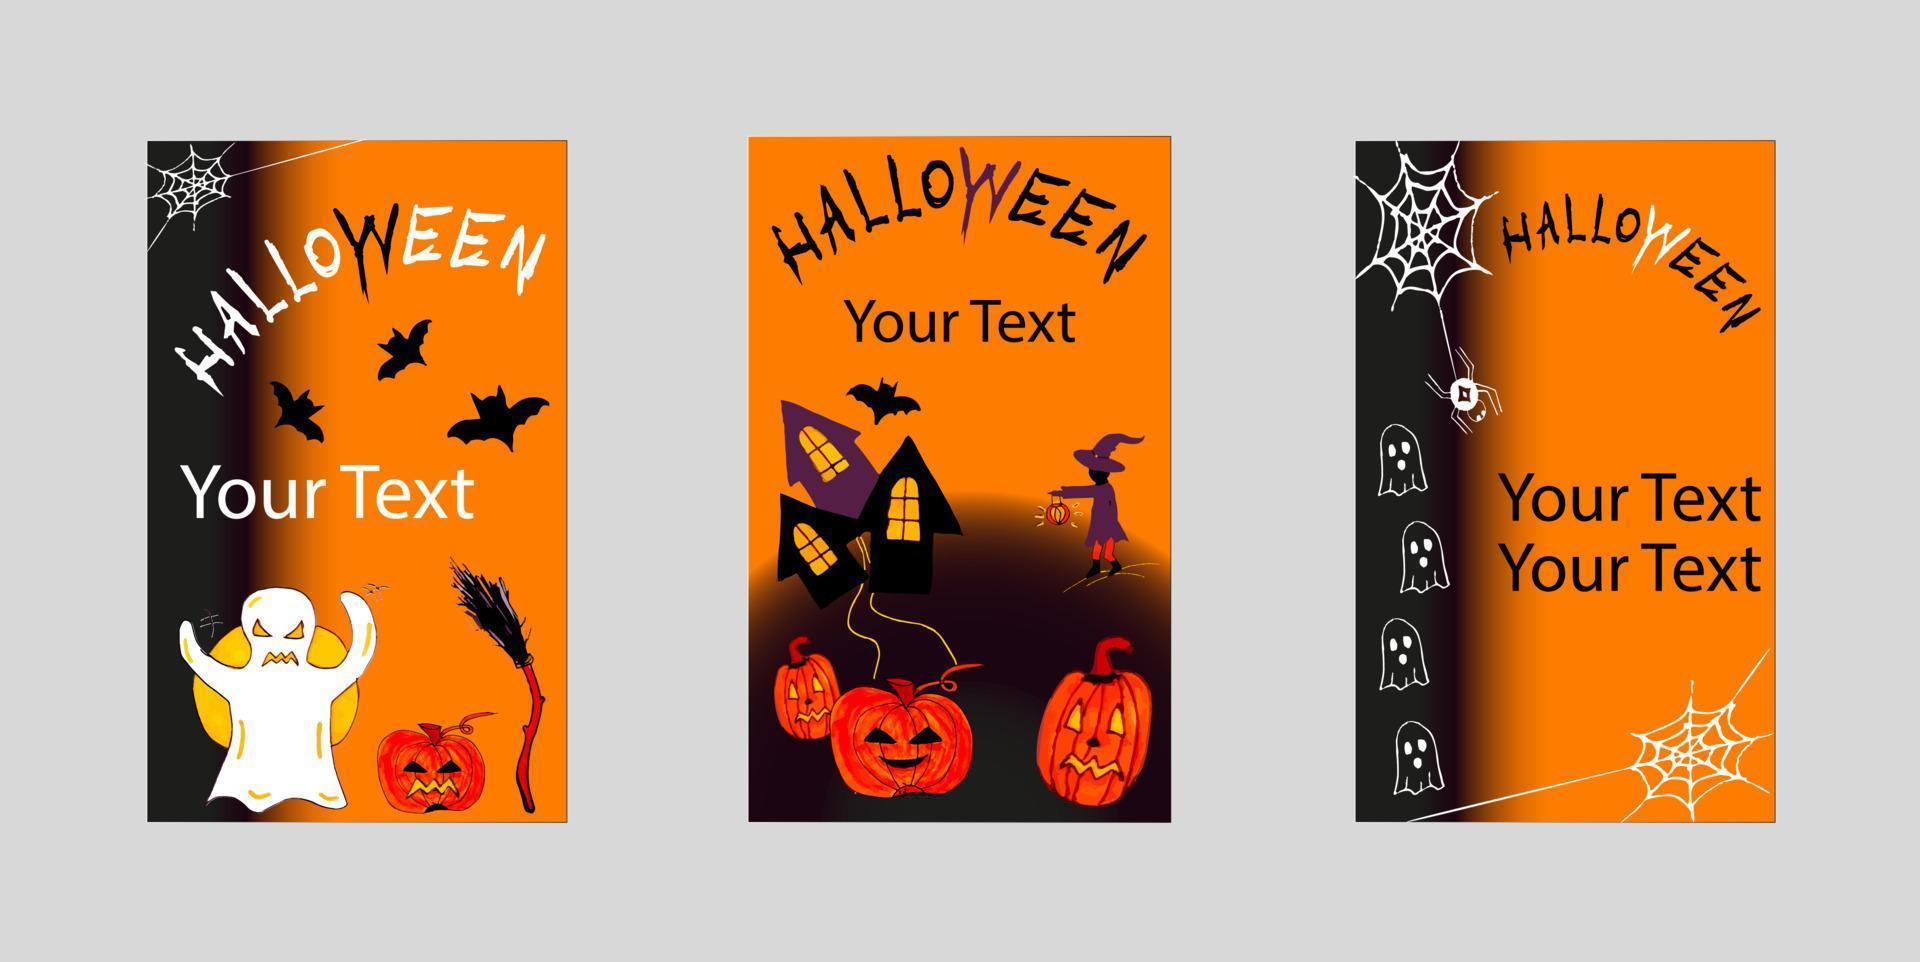 halloween-partykarte geisterbesen spinne kürbis und gruseliges haus hintergrund orange schwarz hell halloween urlaub ankündigungsplakat vektor